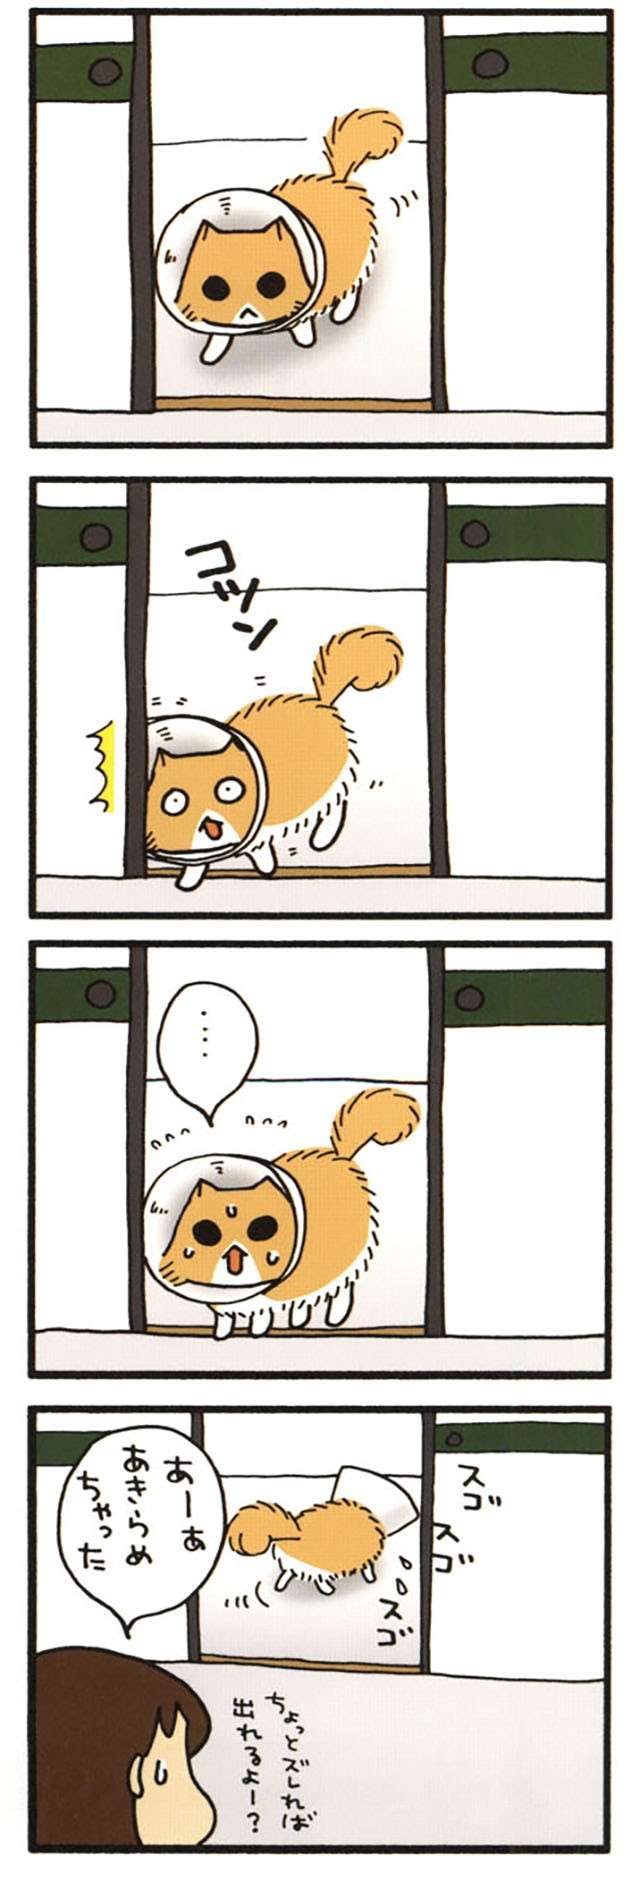 エリザベスカラーをつけた愛猫。コツンと部屋のドアにぶつかっただけで可愛い反応に！ ／うちの3ねこ 2 uchinosanneko_002_010_2.jpg